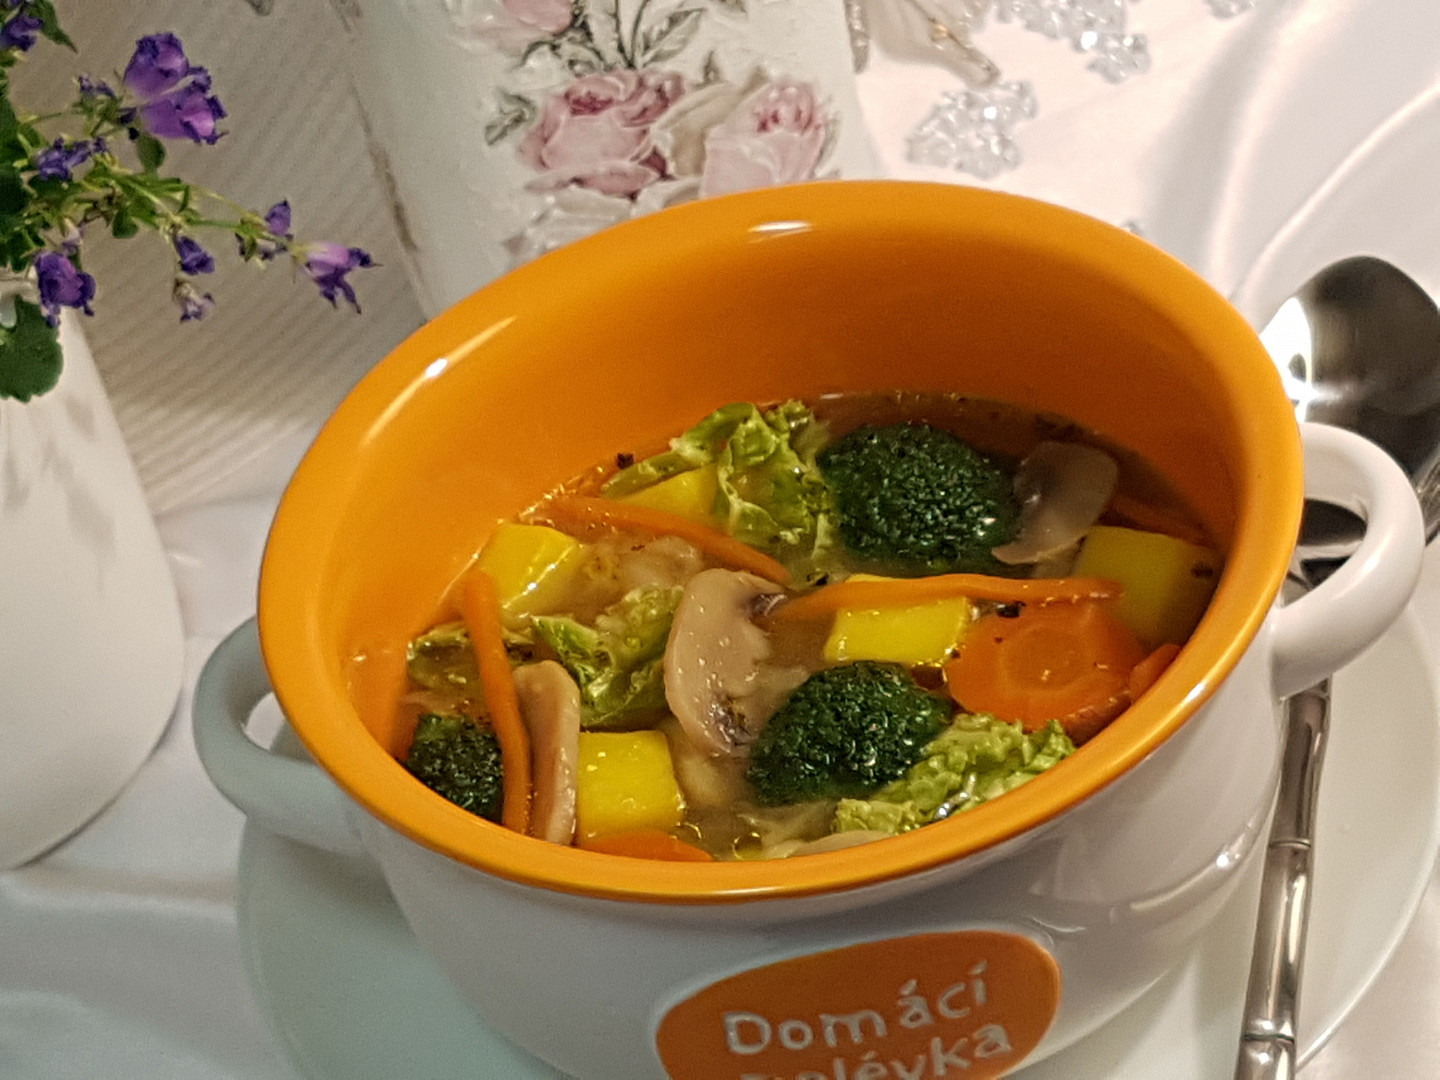 Kapustovo-brokolicová polévka se žampiony